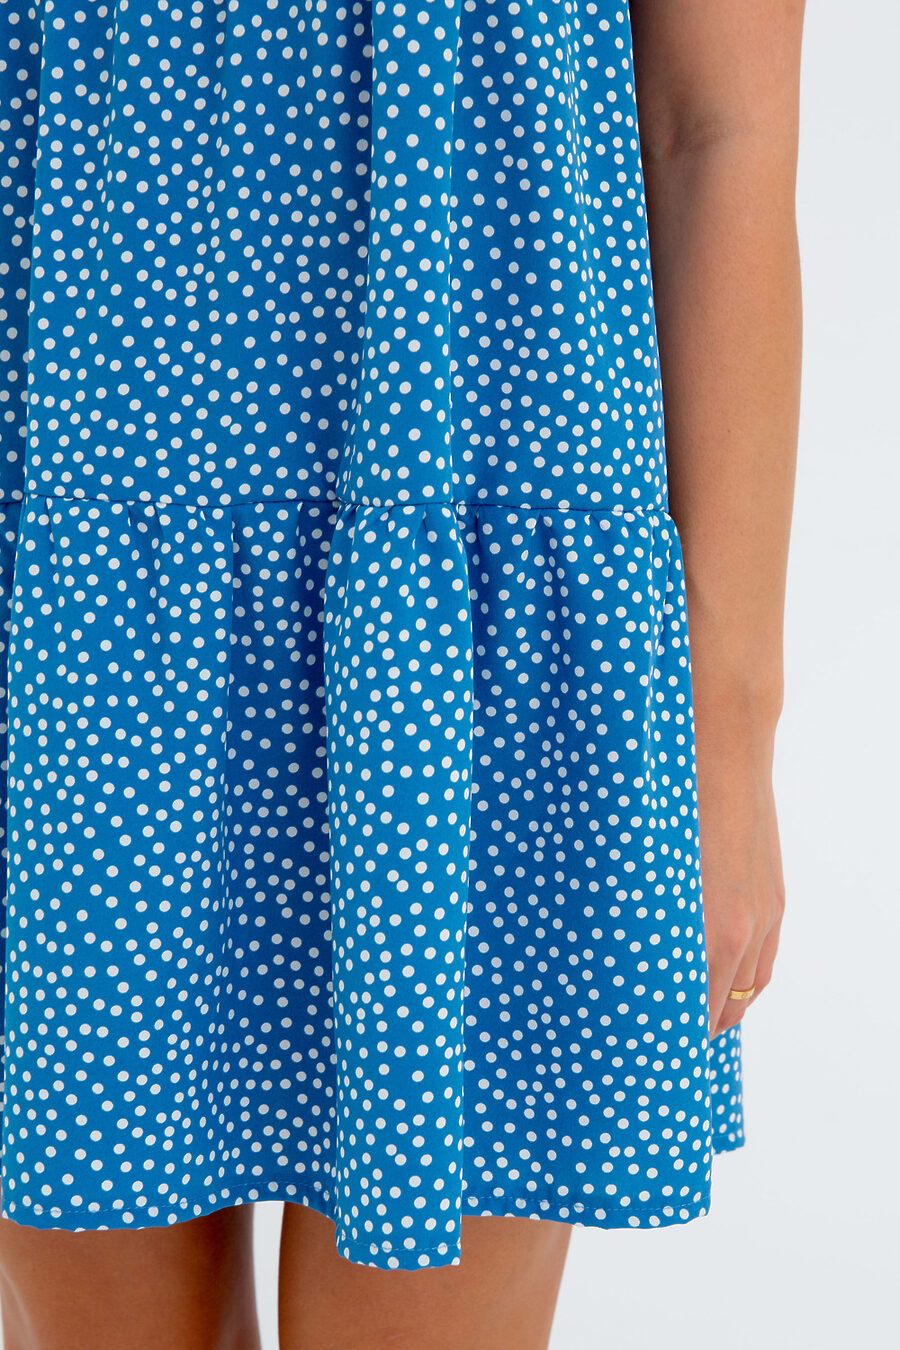 Платье П-7 для женщин НАТАЛИ 775470 купить оптом от производителя. Совместная покупка женской одежды в OptMoyo